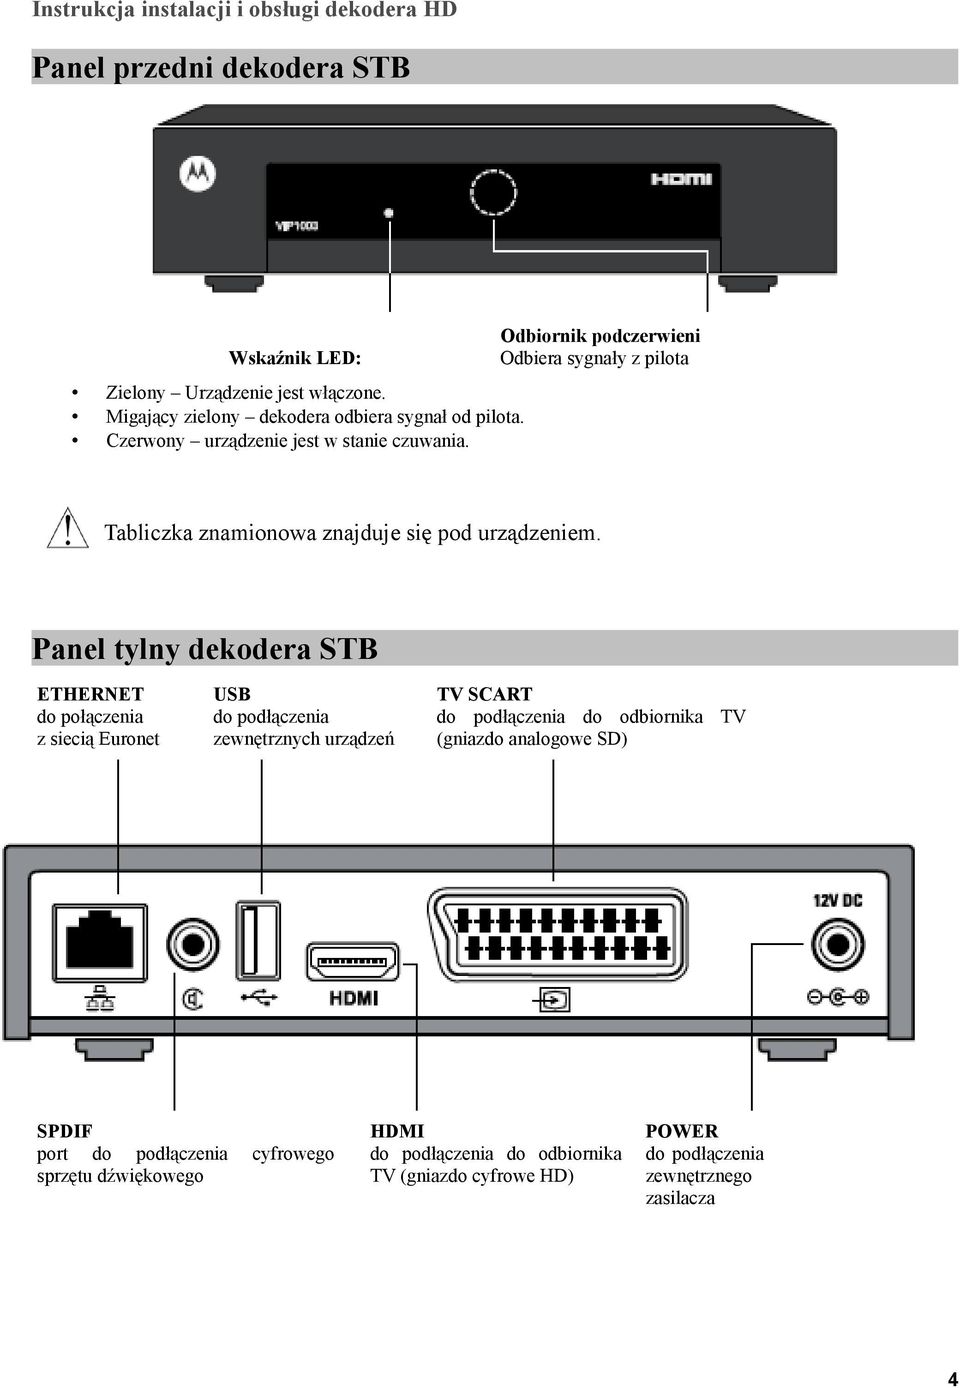 Panel tylny dekodera STB ETHERNET do połączenia z siecią Euronet USB do podłączenia zewnętrznych urządzeń SPDIF port do podłączenia sprzętu